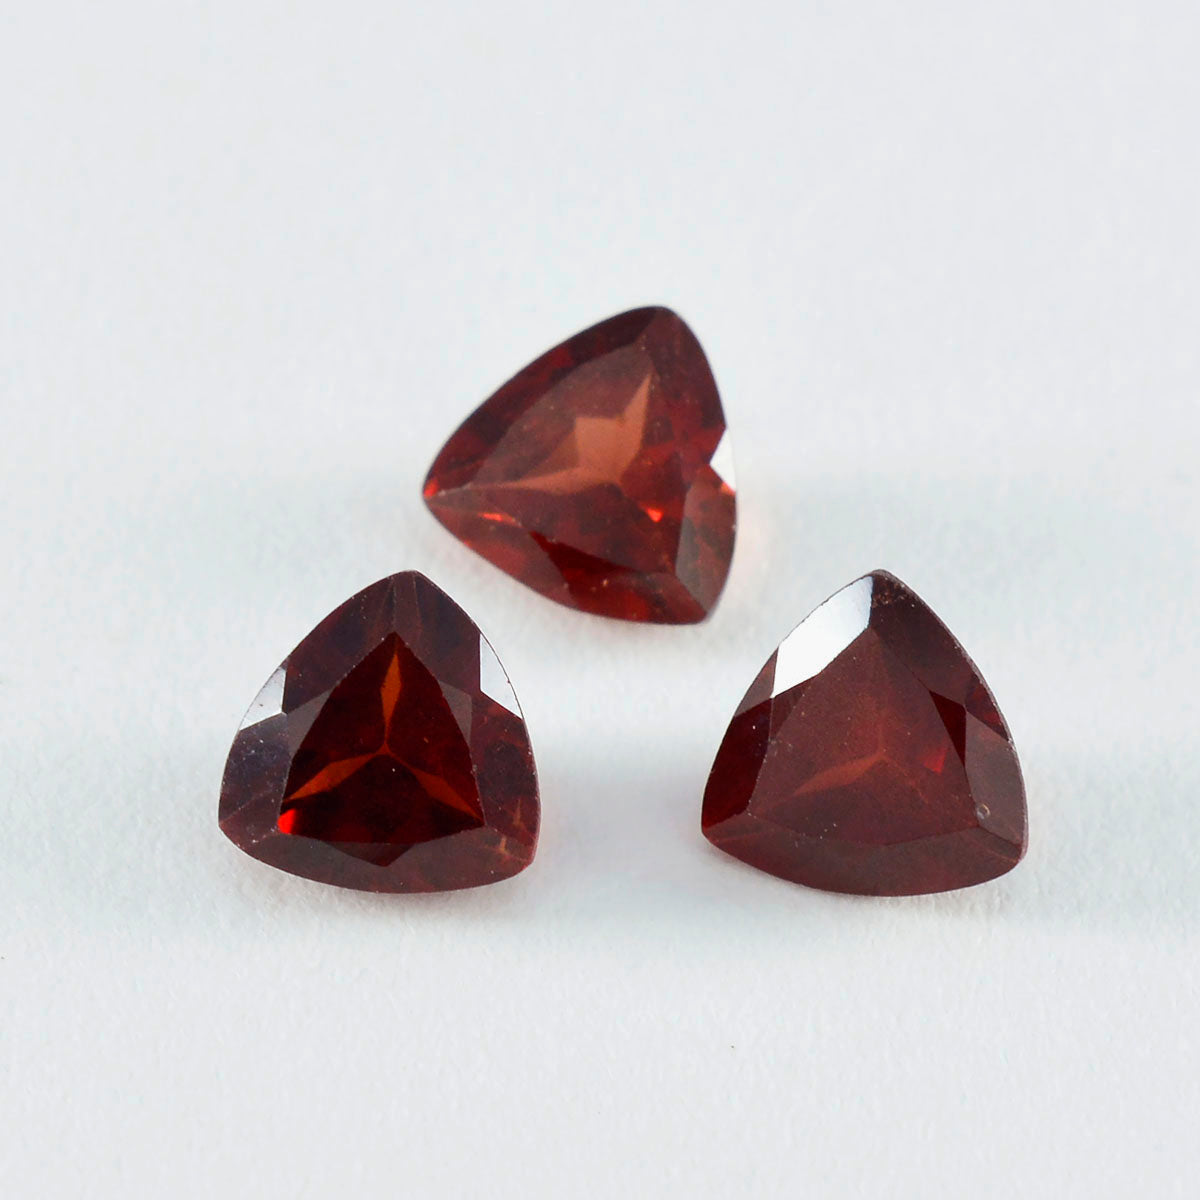 Riyogems 1PC Natural Red Garnet Faceted 11x11 mm Trillion Shape superb Quality Gems